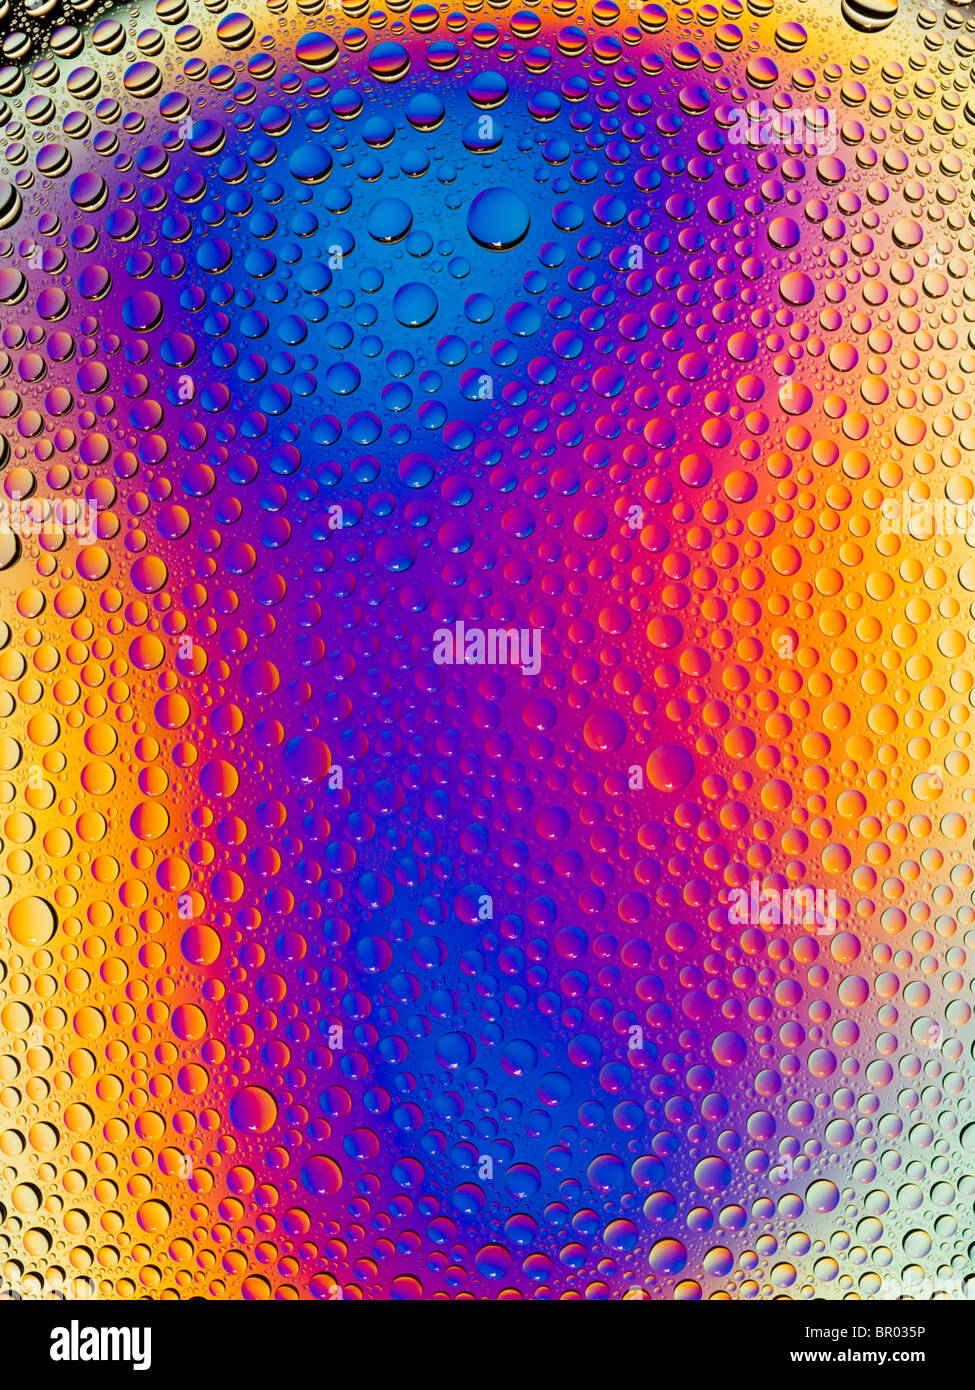 Image abstraite de gouttes d'eau colorée par polarisation croisée. Banque D'Images